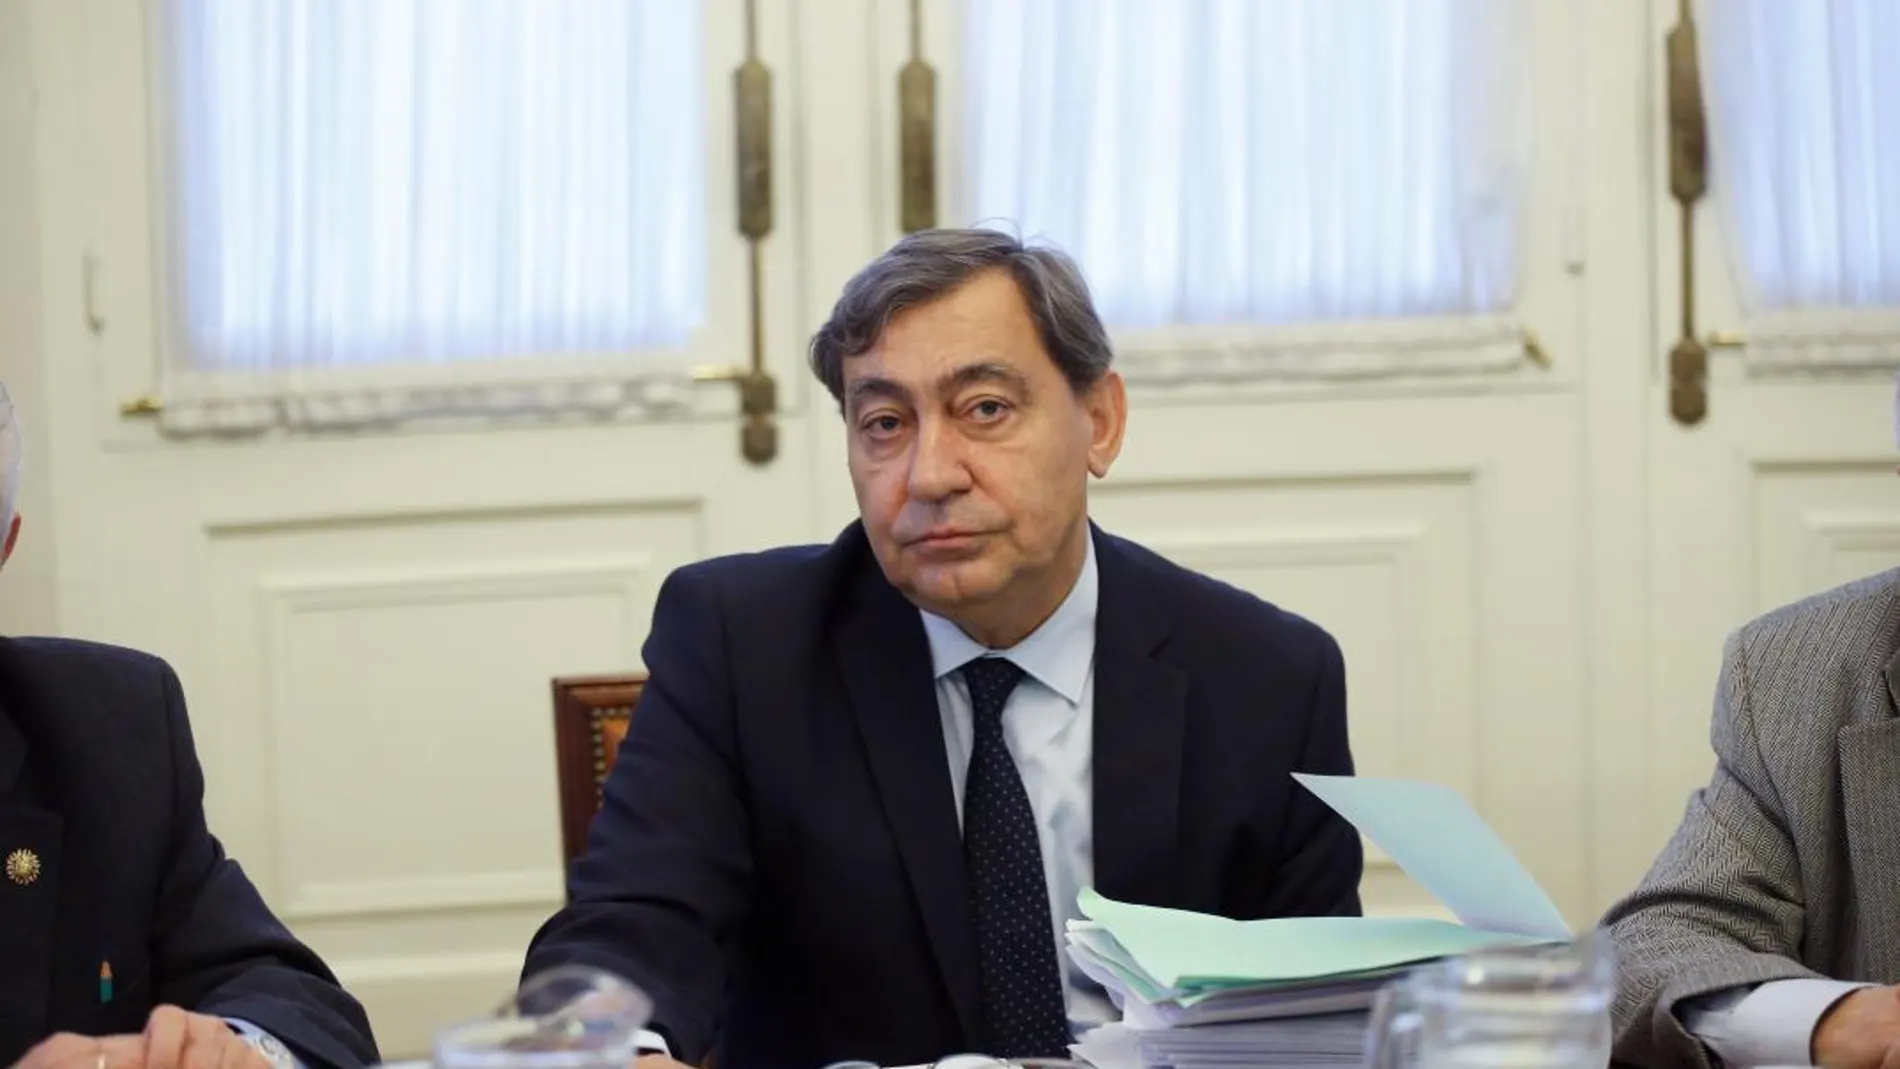 Julián Sánchez Melgar ha sido el magistrado ponente de la sentencia